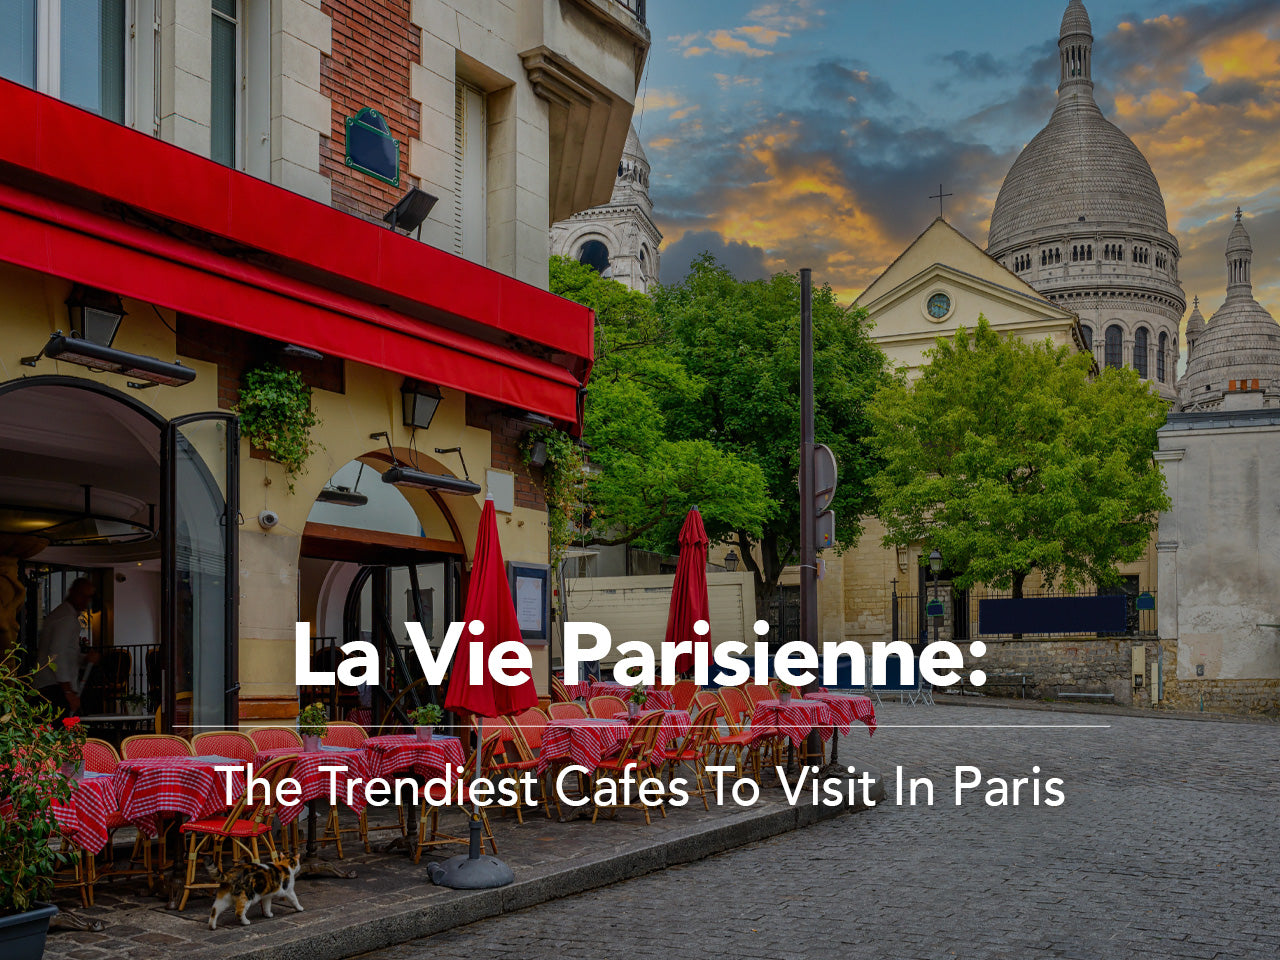 La Vie Parisienne: The Trendiest Cafes To Visit In Paris